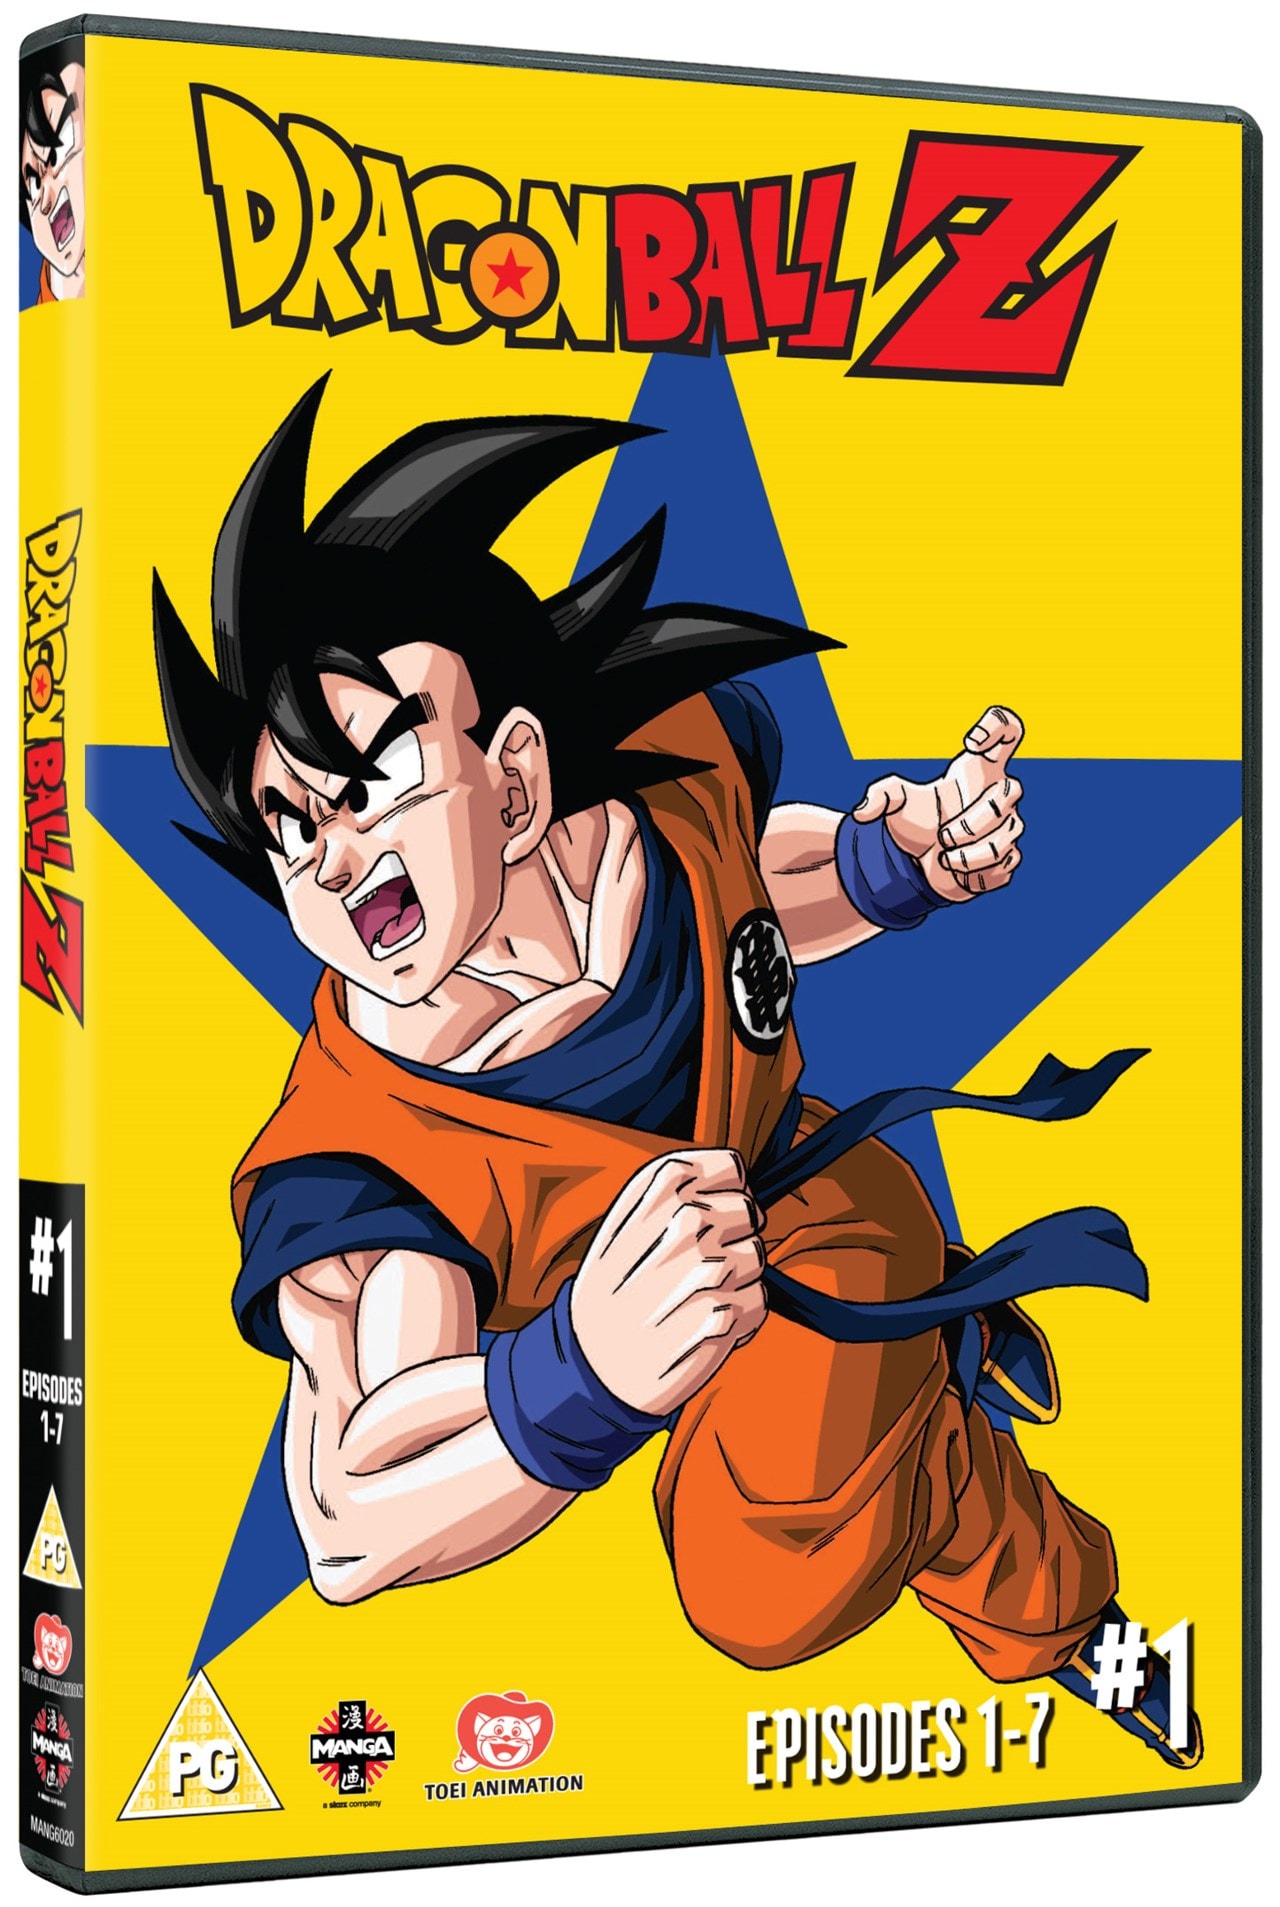 Dragon Ball Z: Season 1 - Part 1 | DVD | Free shipping ...